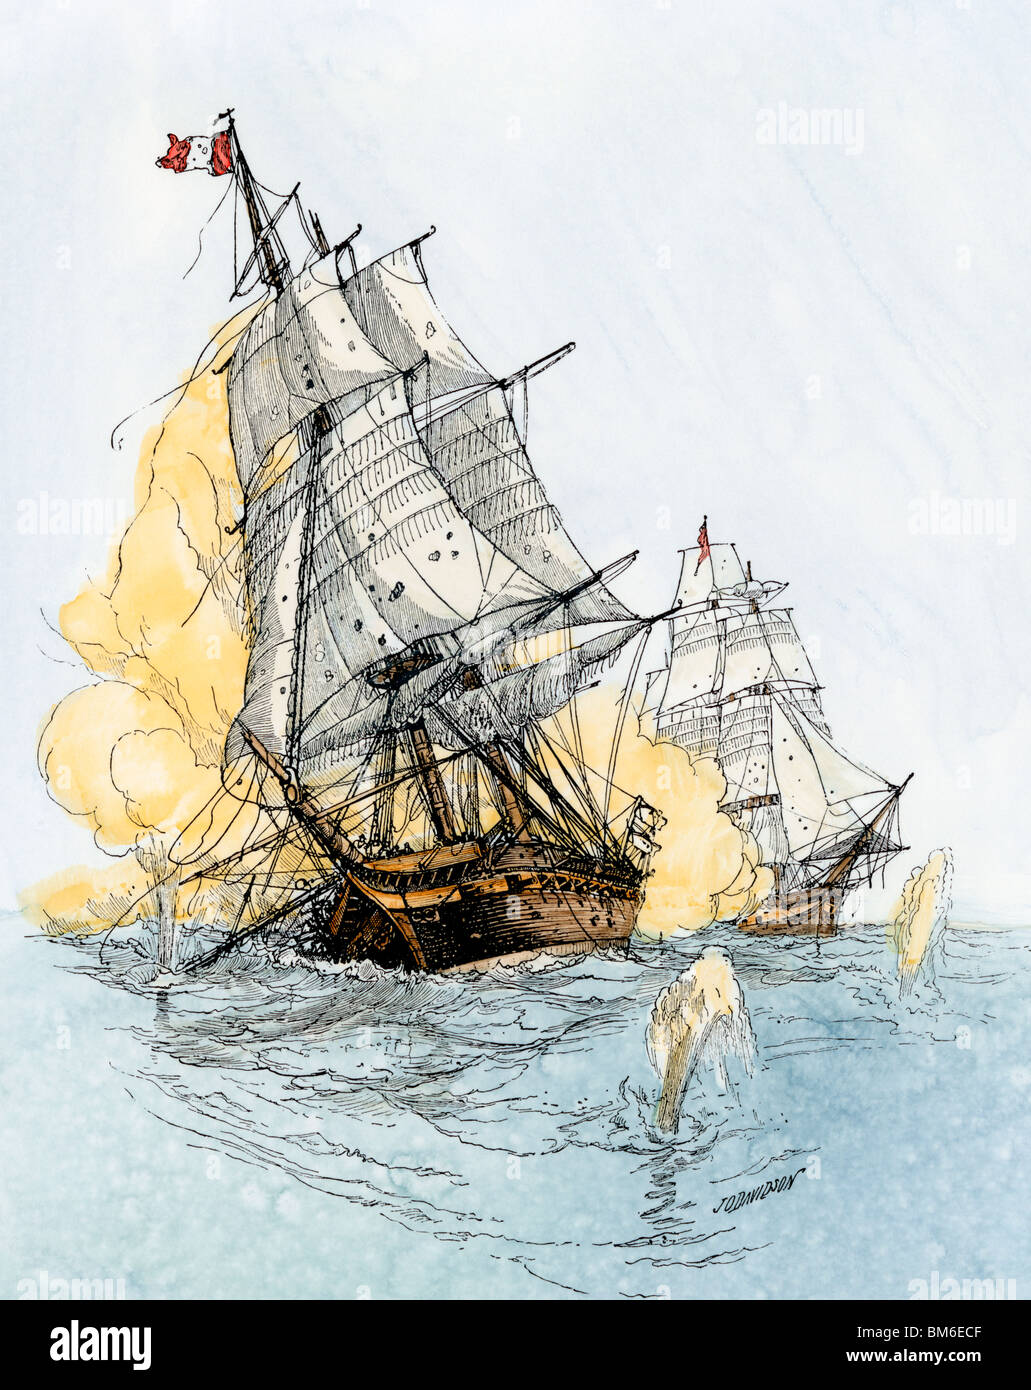 Navire américain 'Boston' 'tirer sur le berceau' dans une guerre navale non déclarée avec la France, 1800. À la main, gravure sur bois Banque D'Images